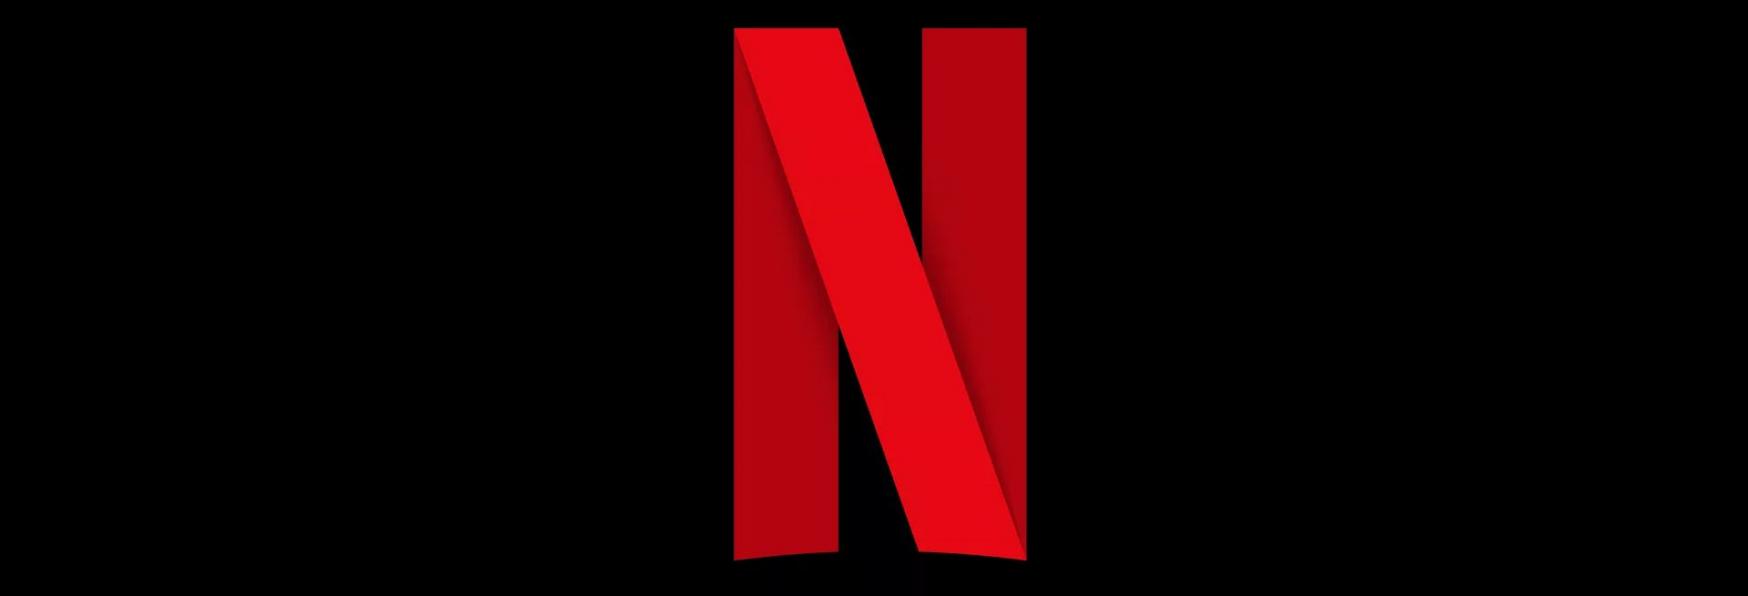 Netflix ha Finalmente aggiunto una Funzione di cui ogni Abbonato aveva Bisogno